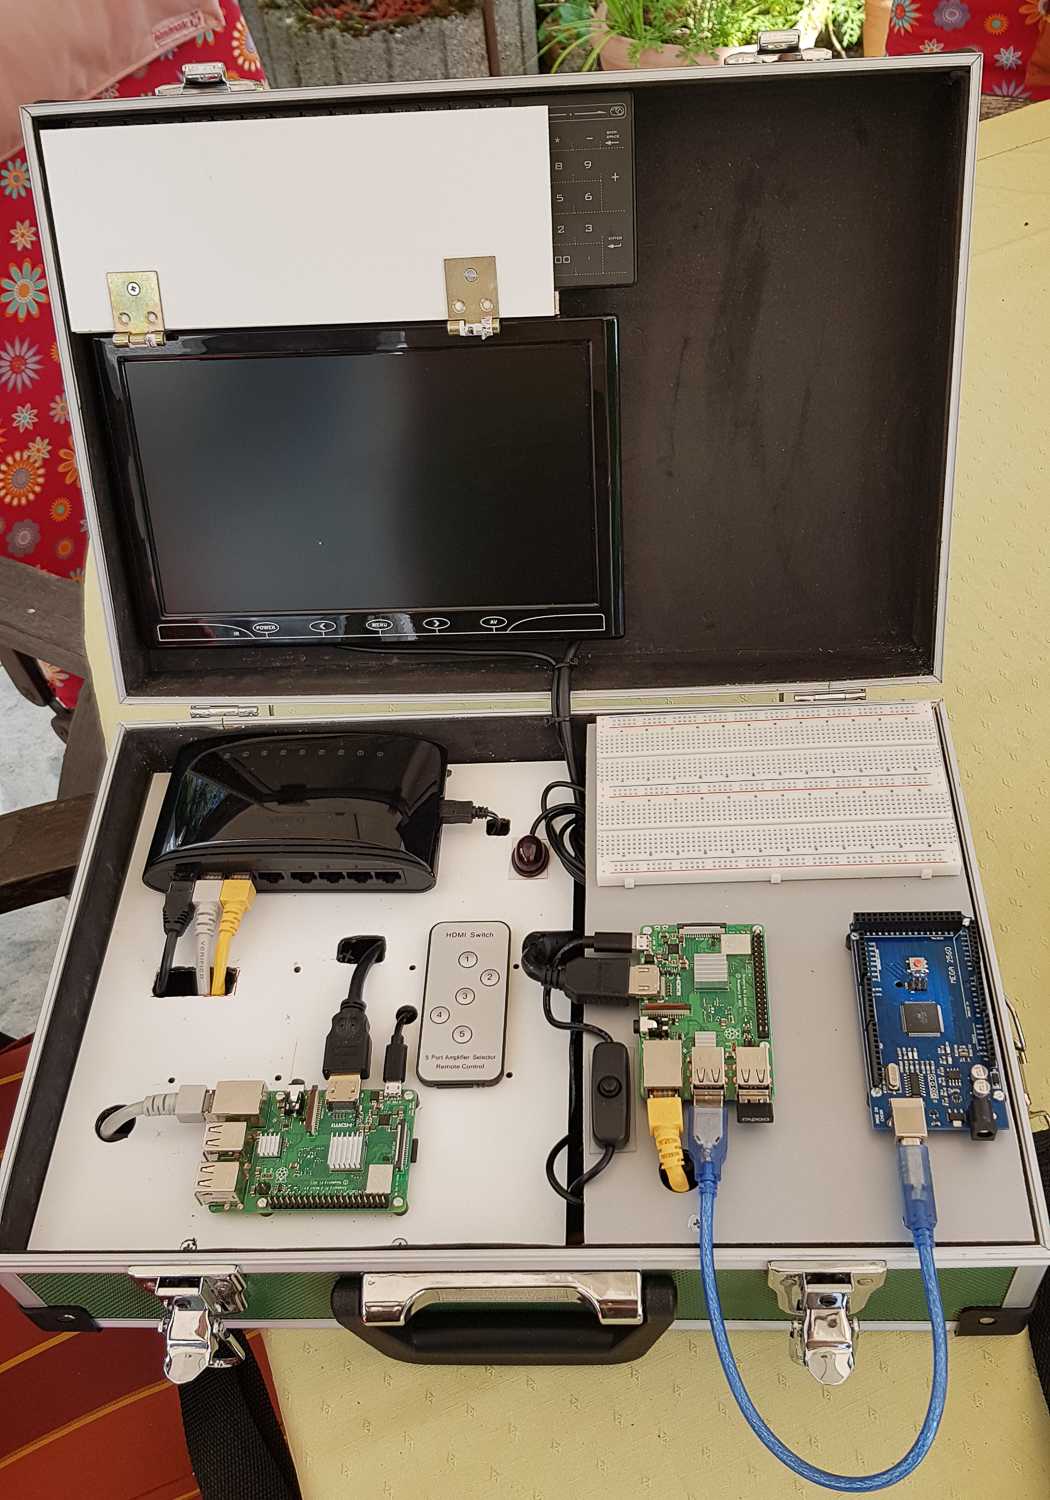 Arduino-Koffer Version 2 mit Raspberry Pis: Keyboard eingeklemmt